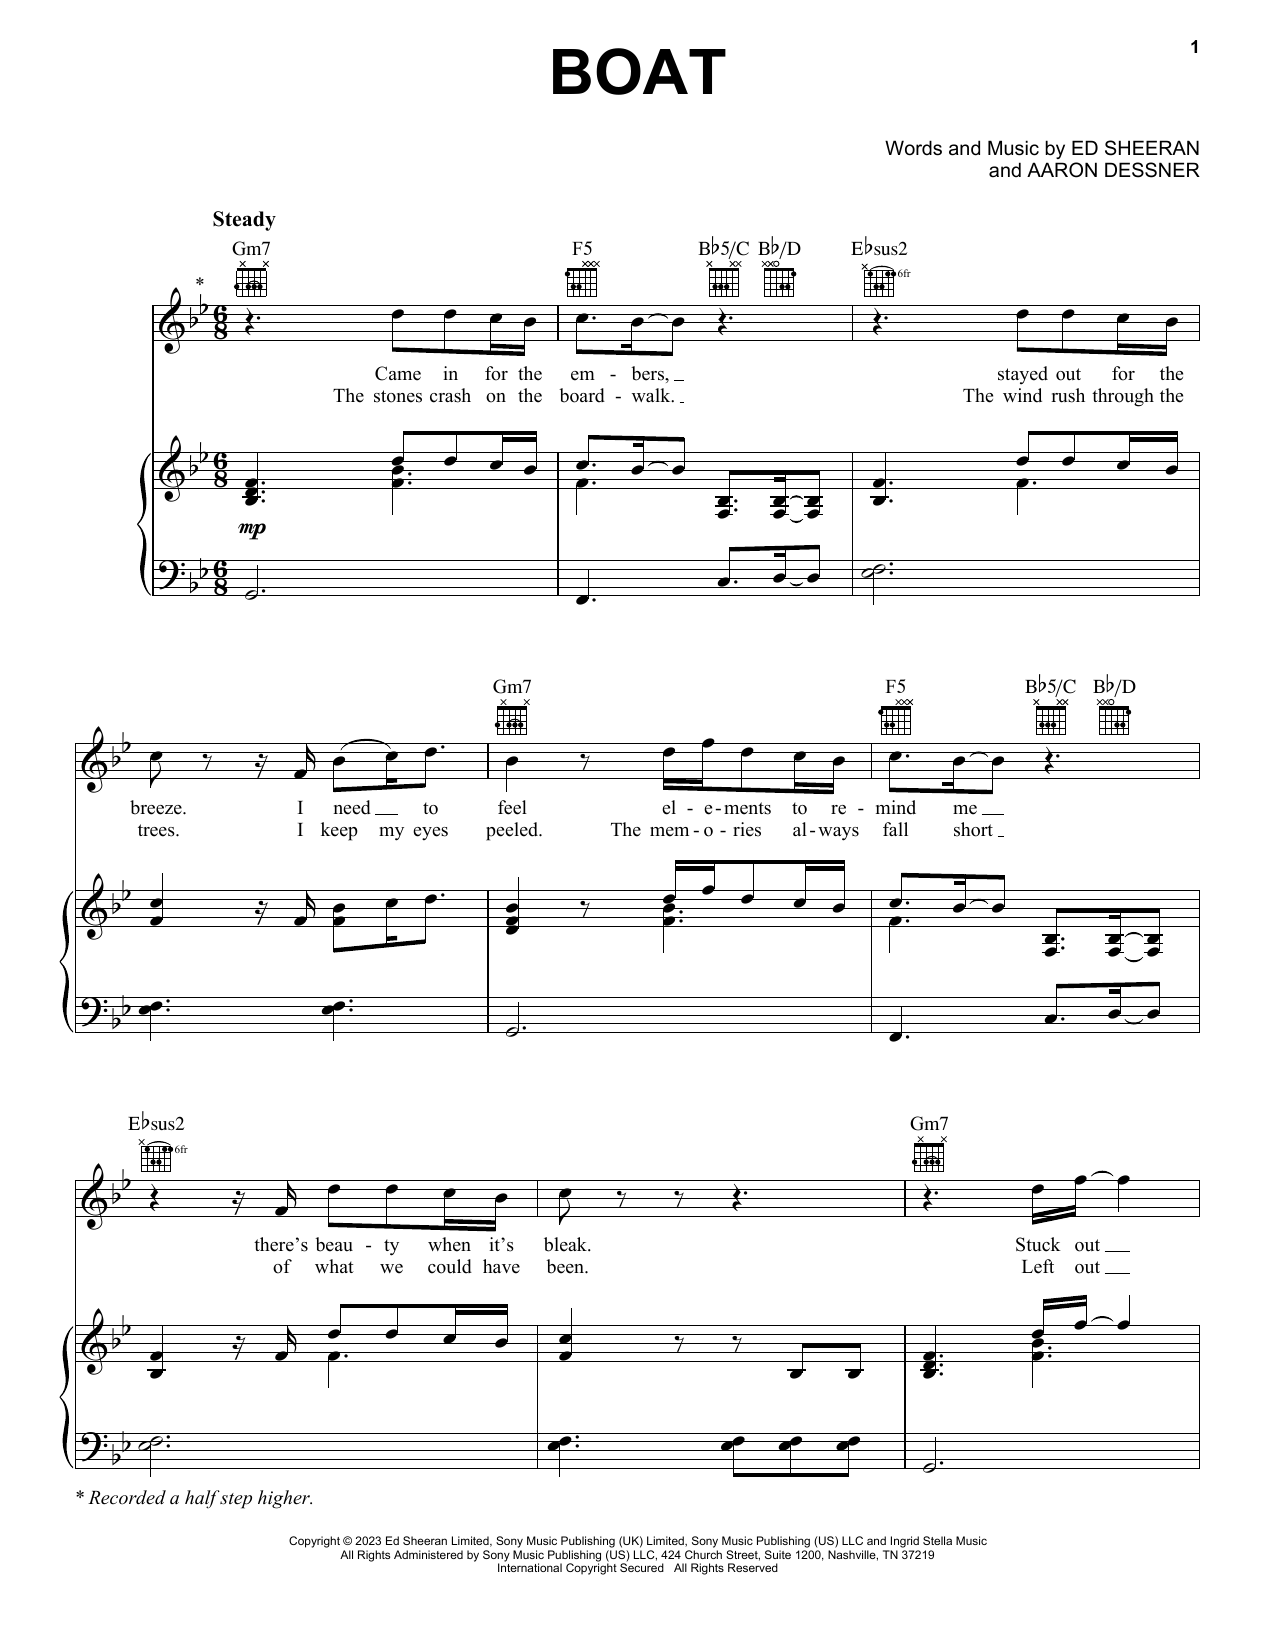 Ed Sheeran Boat sheet music notes and chords. Download Printable PDF.